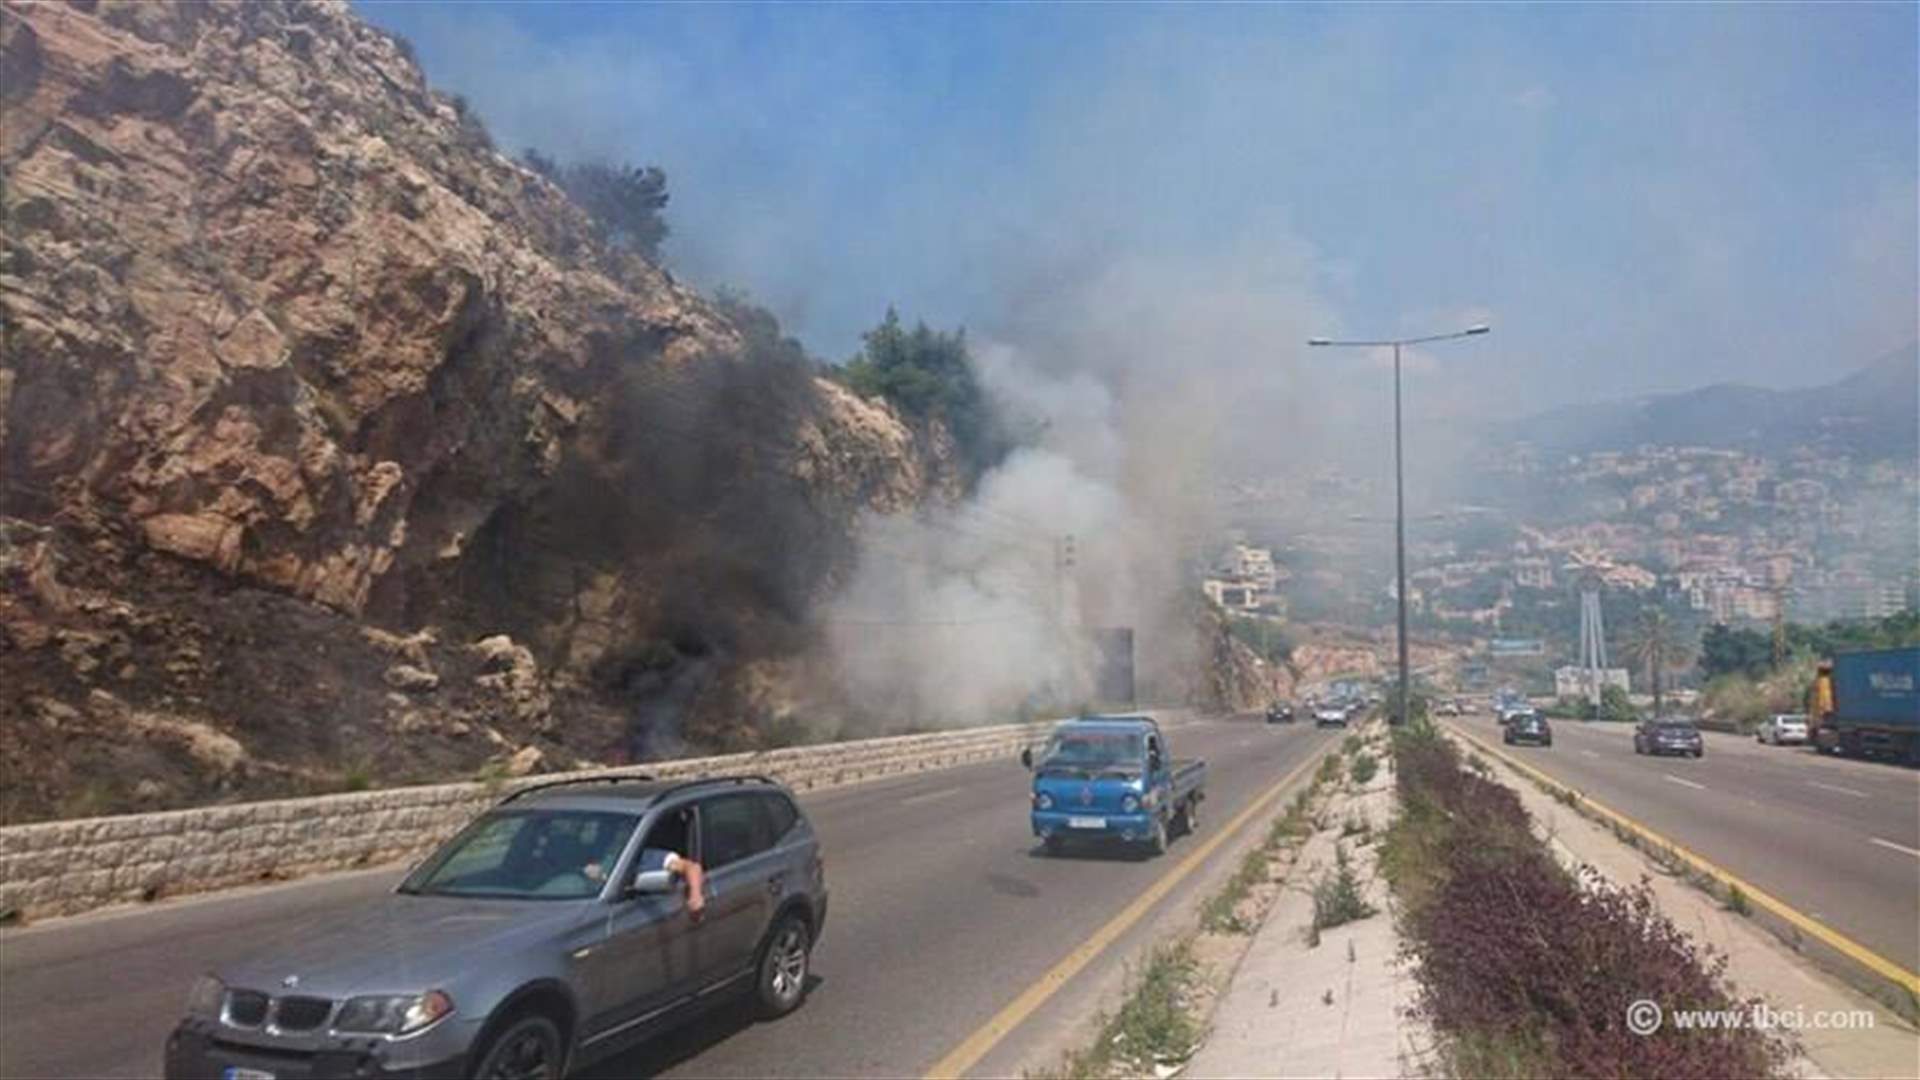 بالصور: حريق مقابل كازينو لبنان على المسلك الشرقي للأوتوستراد